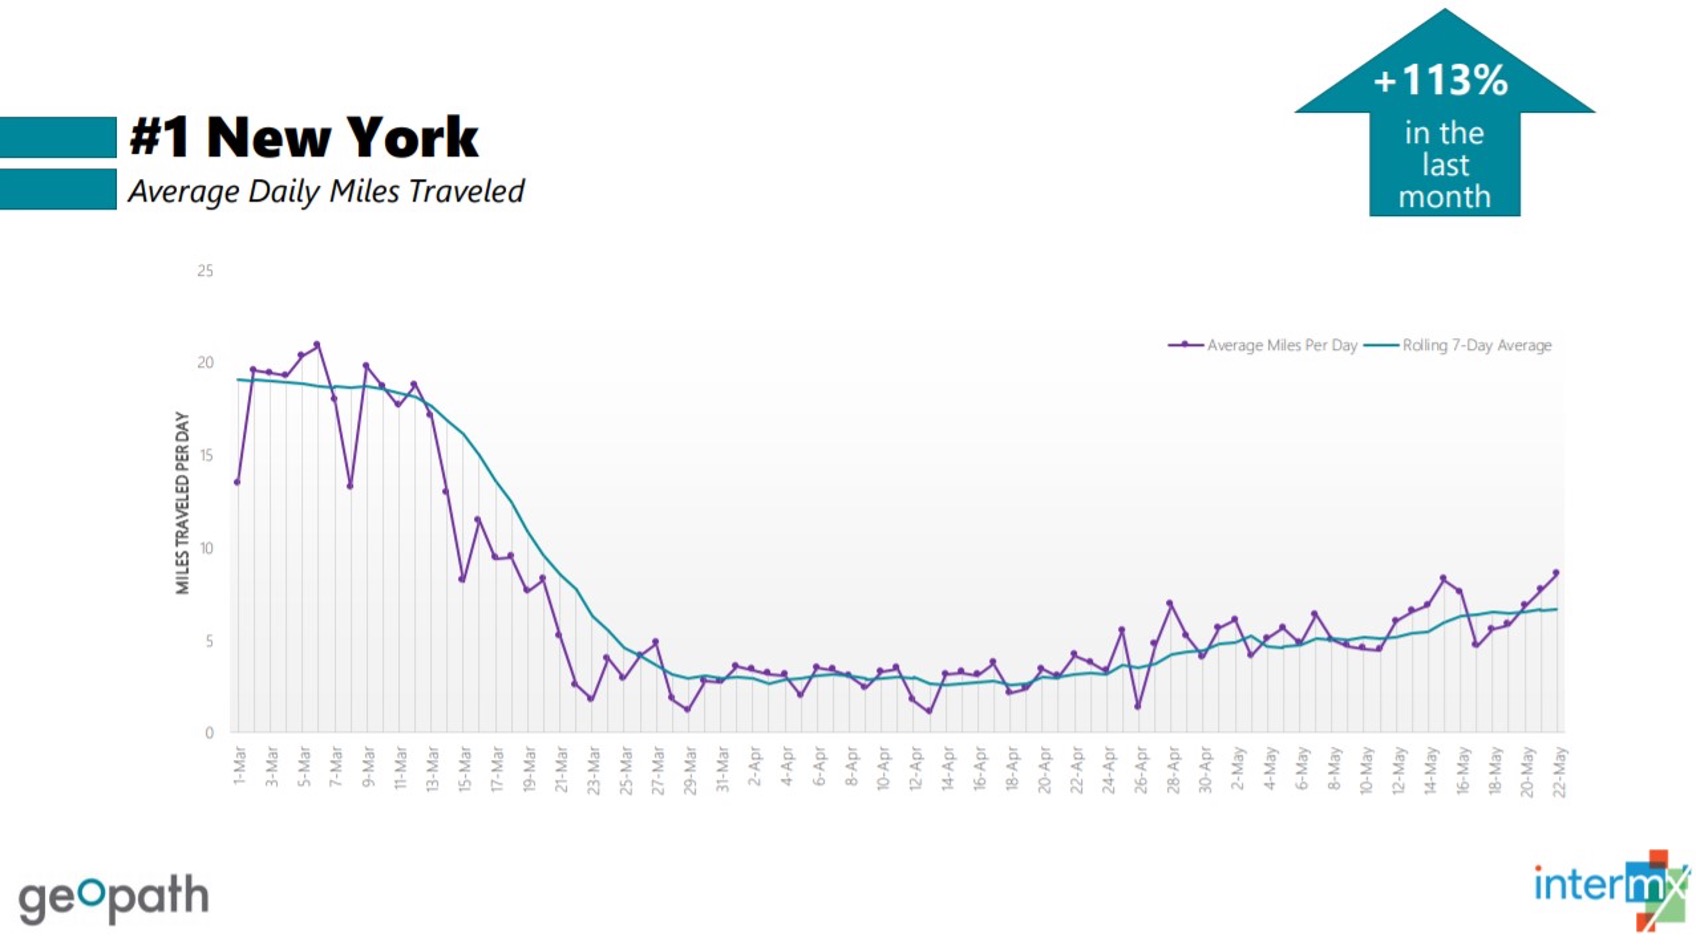 NY Average Daily Miles Traveled - AR James Diagram